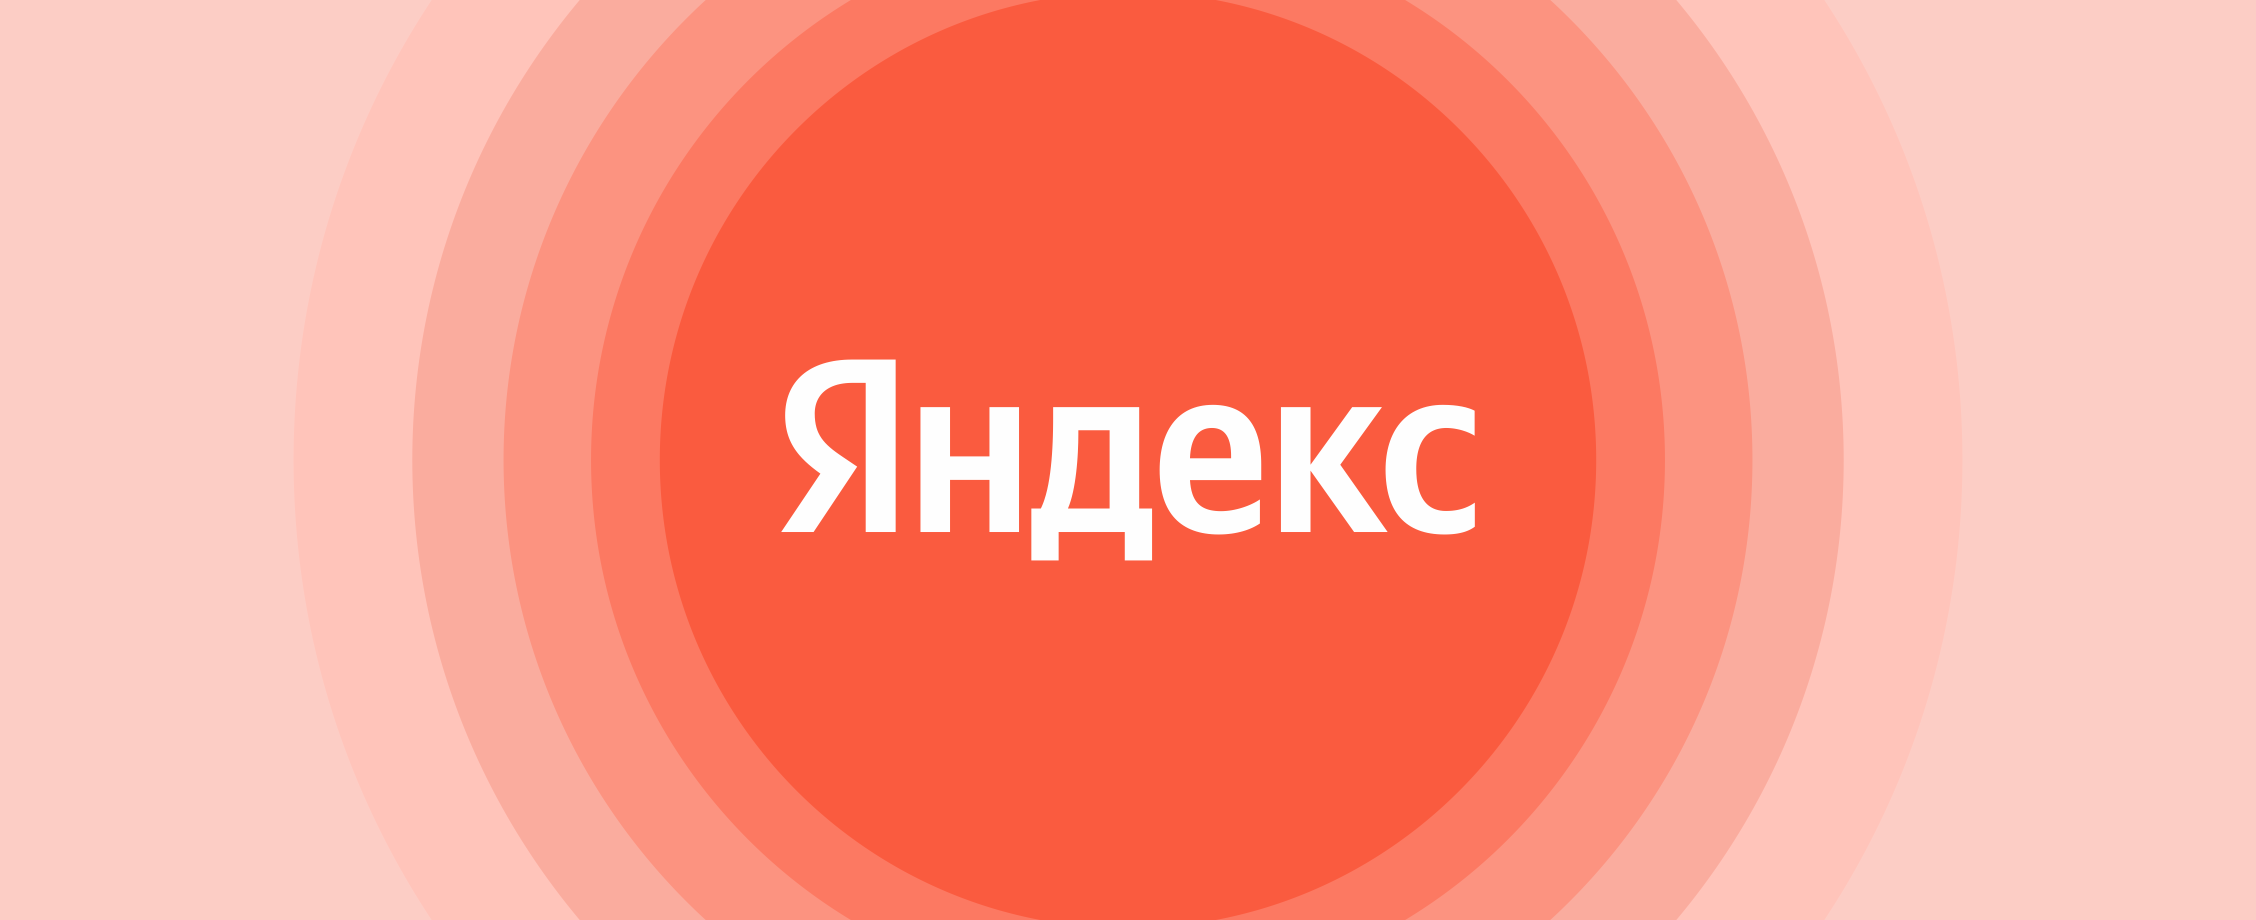 В поиске выгодных акций: что происходит с бумагами «Яндекса»